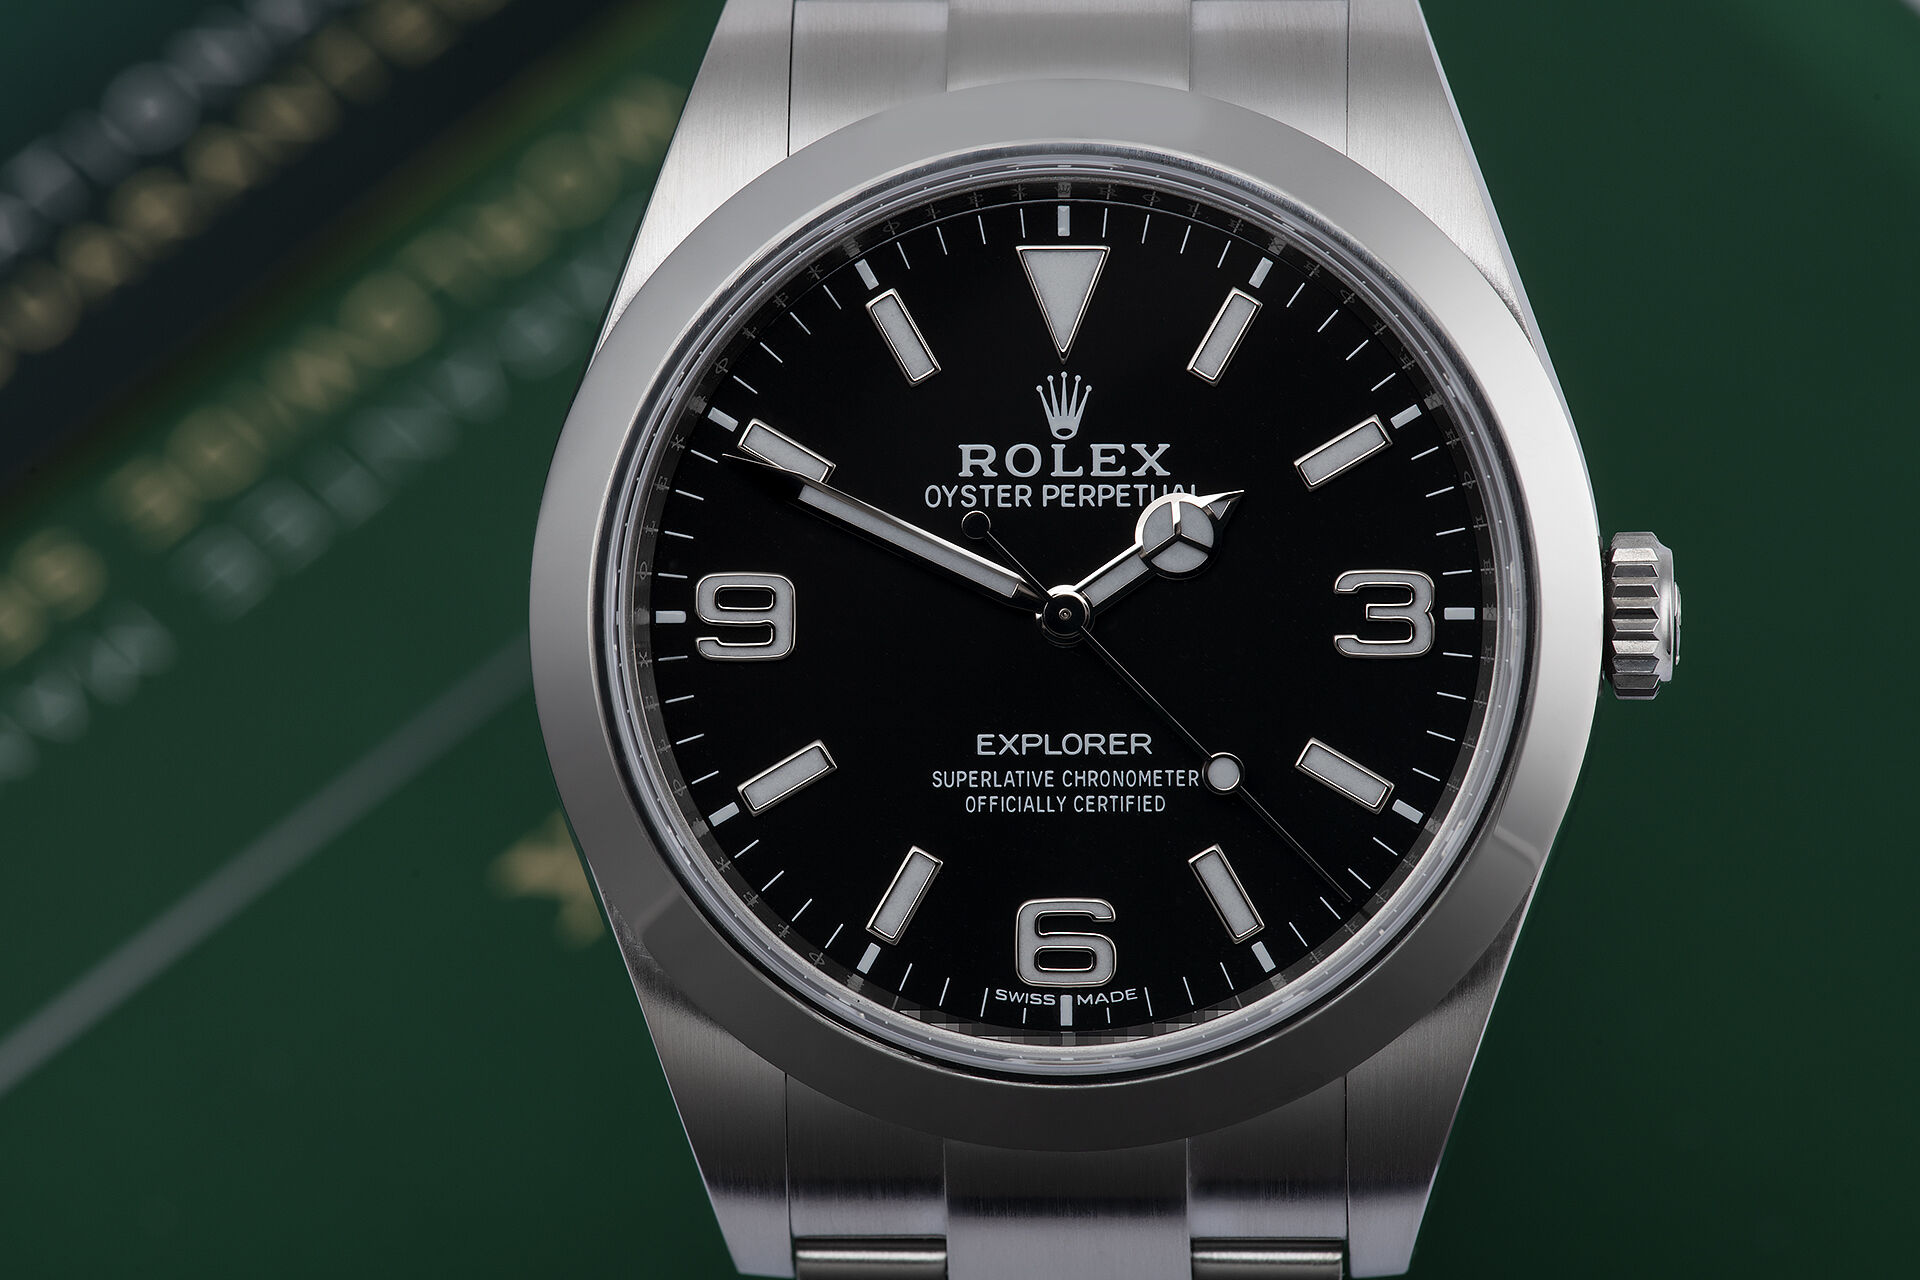 Explorer Watches | ref 214270 | Rolex Warranty to 2025 | The Watch Club